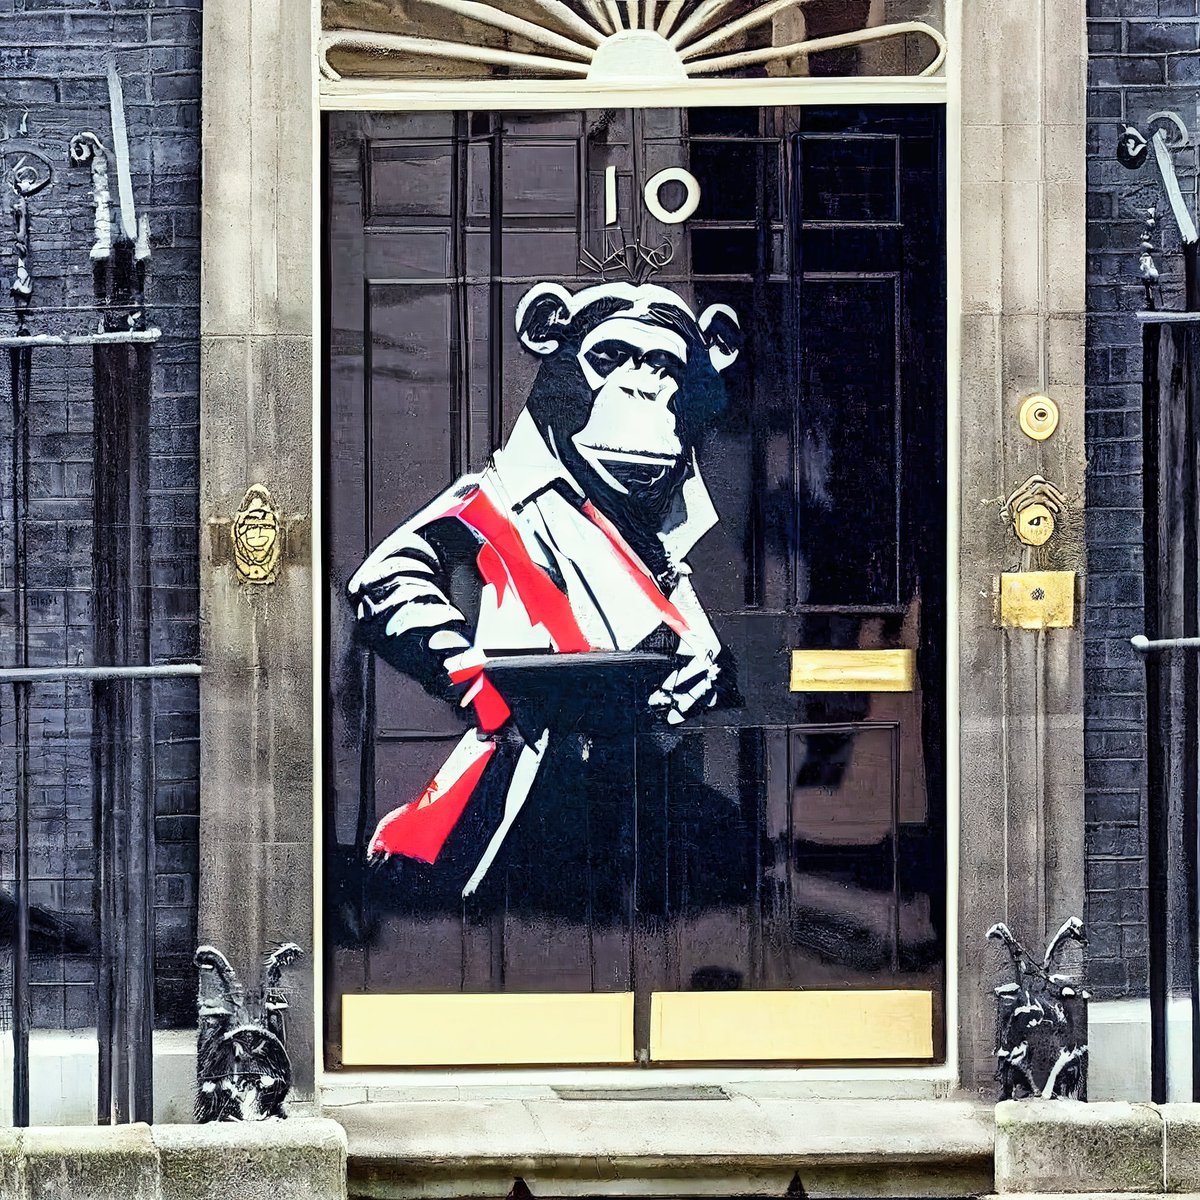 Banksy Art.
#midjourney 
#digitalimages 
#banksy 
#banksyart 
#images 
#britishpolitics 
#number10downingstreet
#PrimeMinister 
#LabourParty